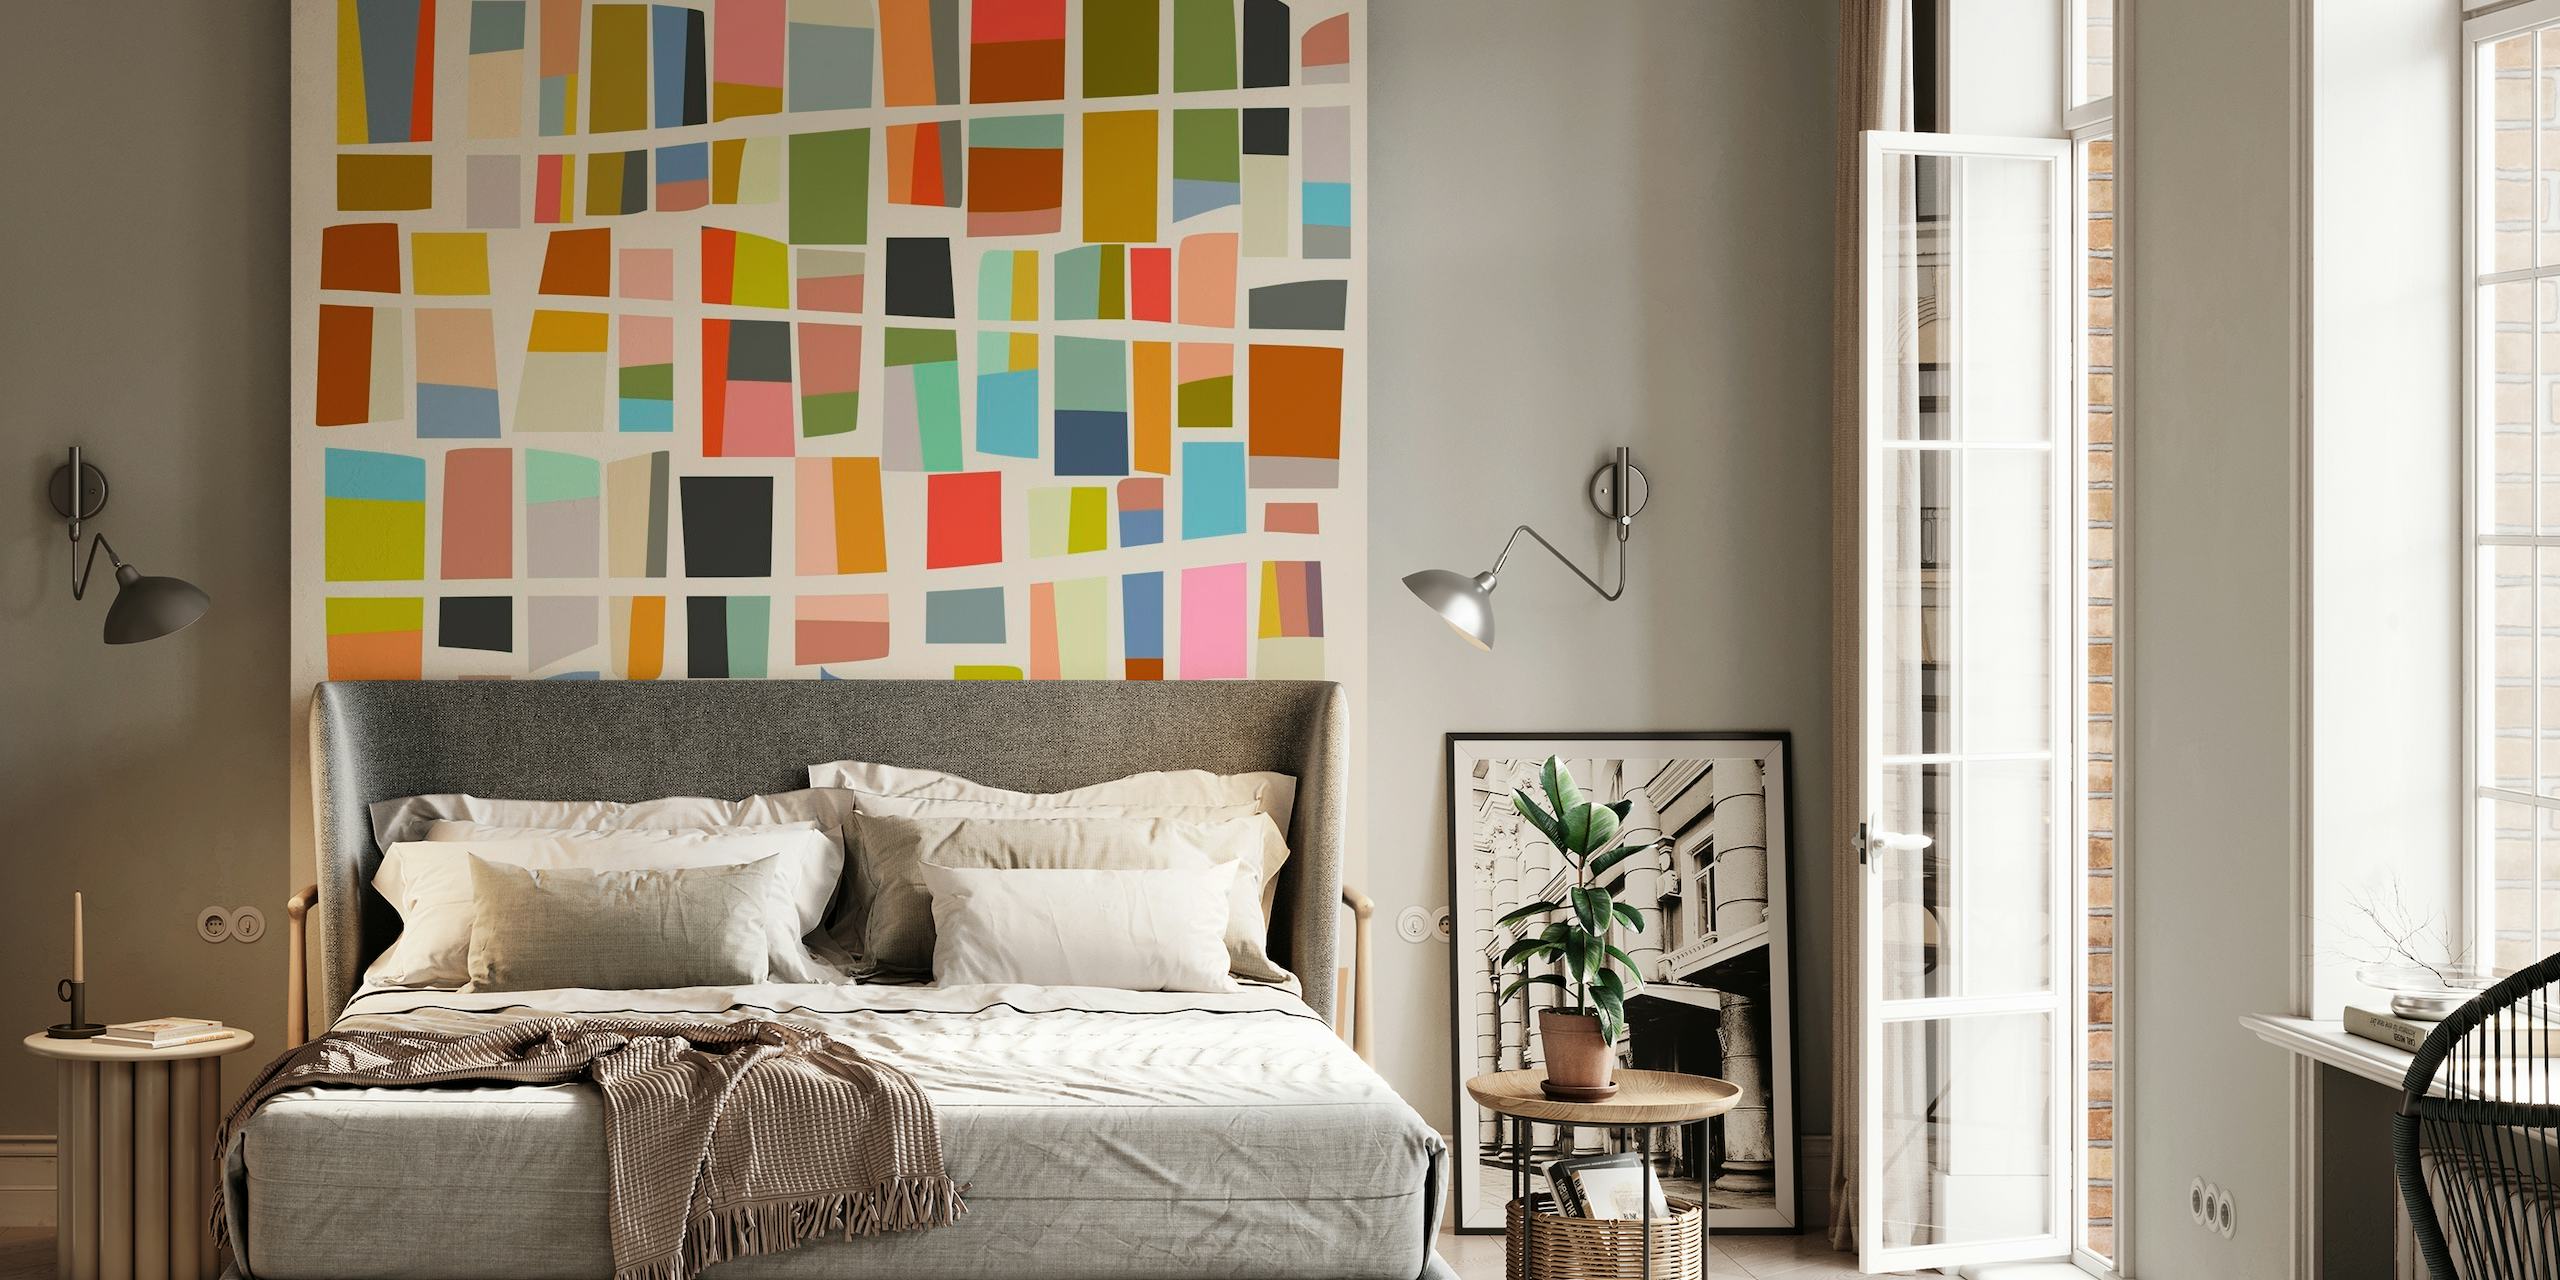 Mural de parede abstrato com 8 peças coloridas com formas geométricas em vários tons